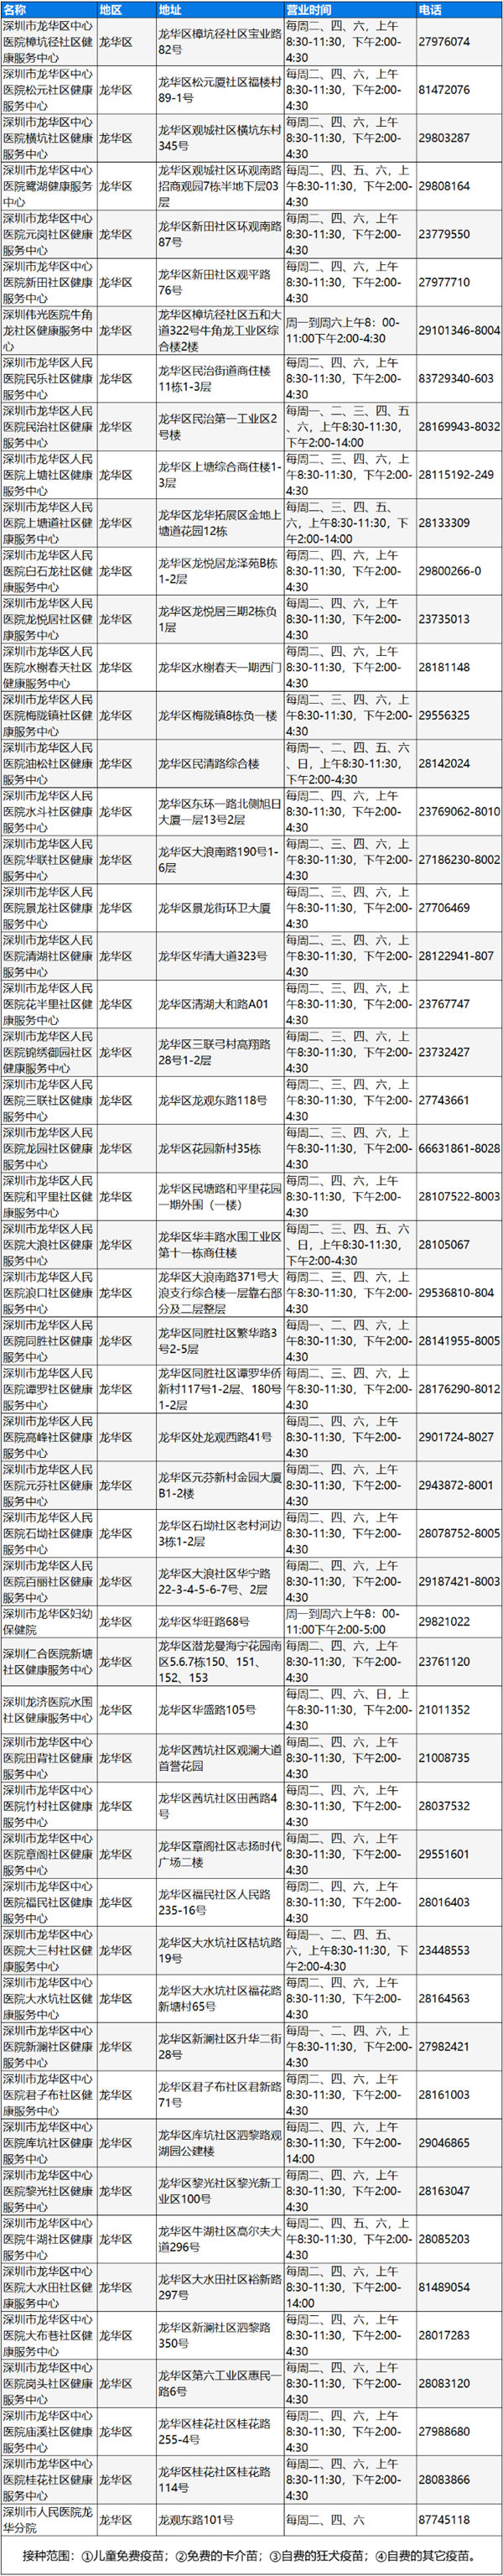 深圳龙华区狂犬疫苗接种地址及电话